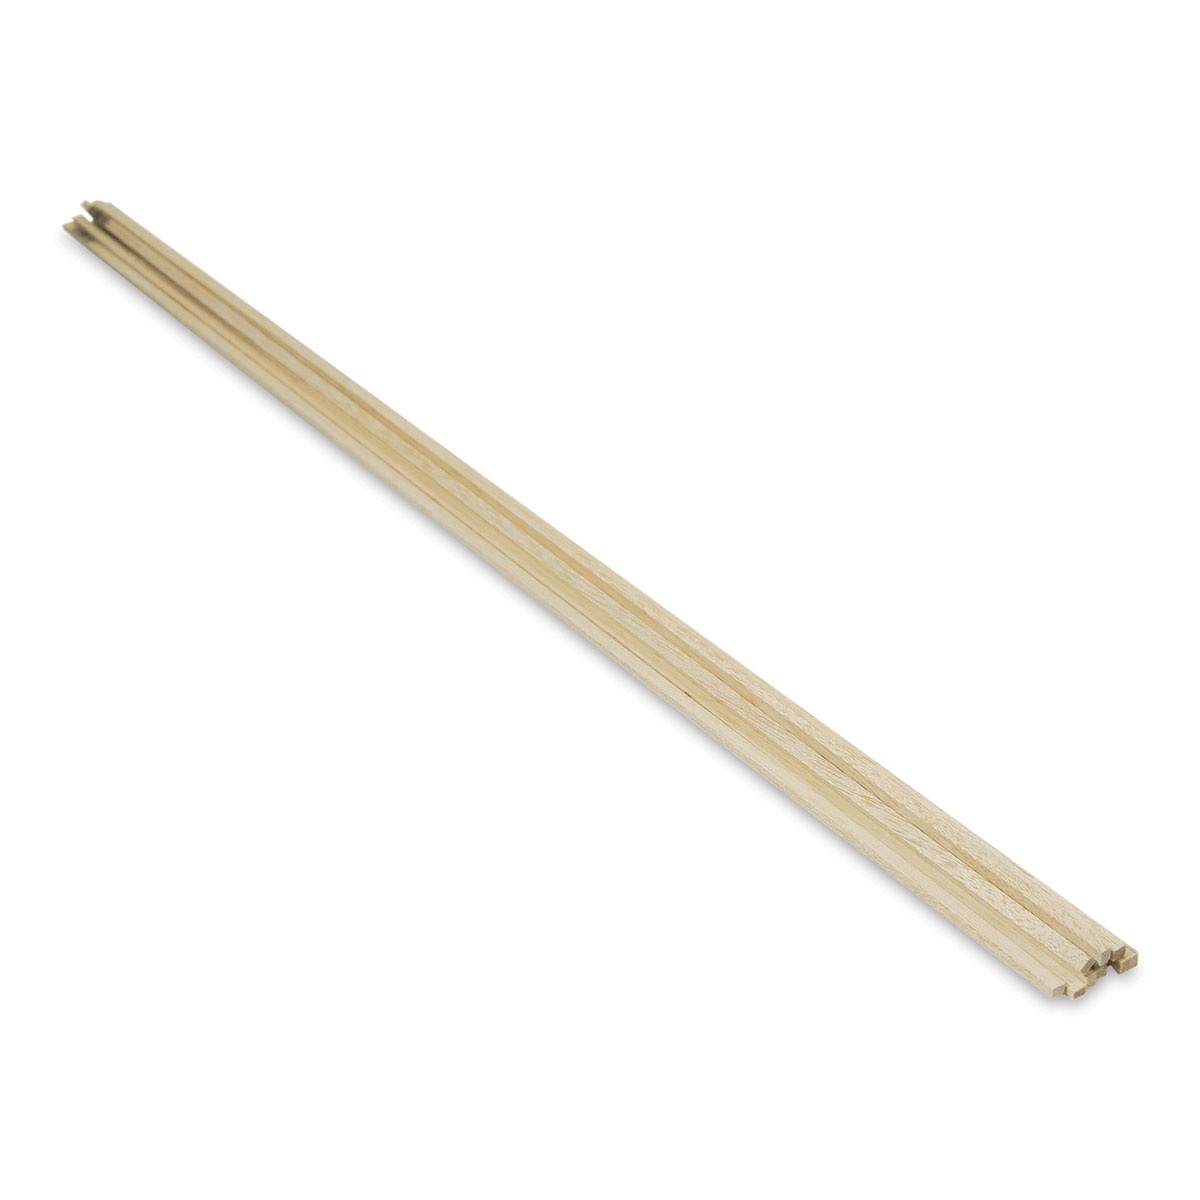 Midwest - Balsa Wood Stick 36 X 1/8 X 1/2